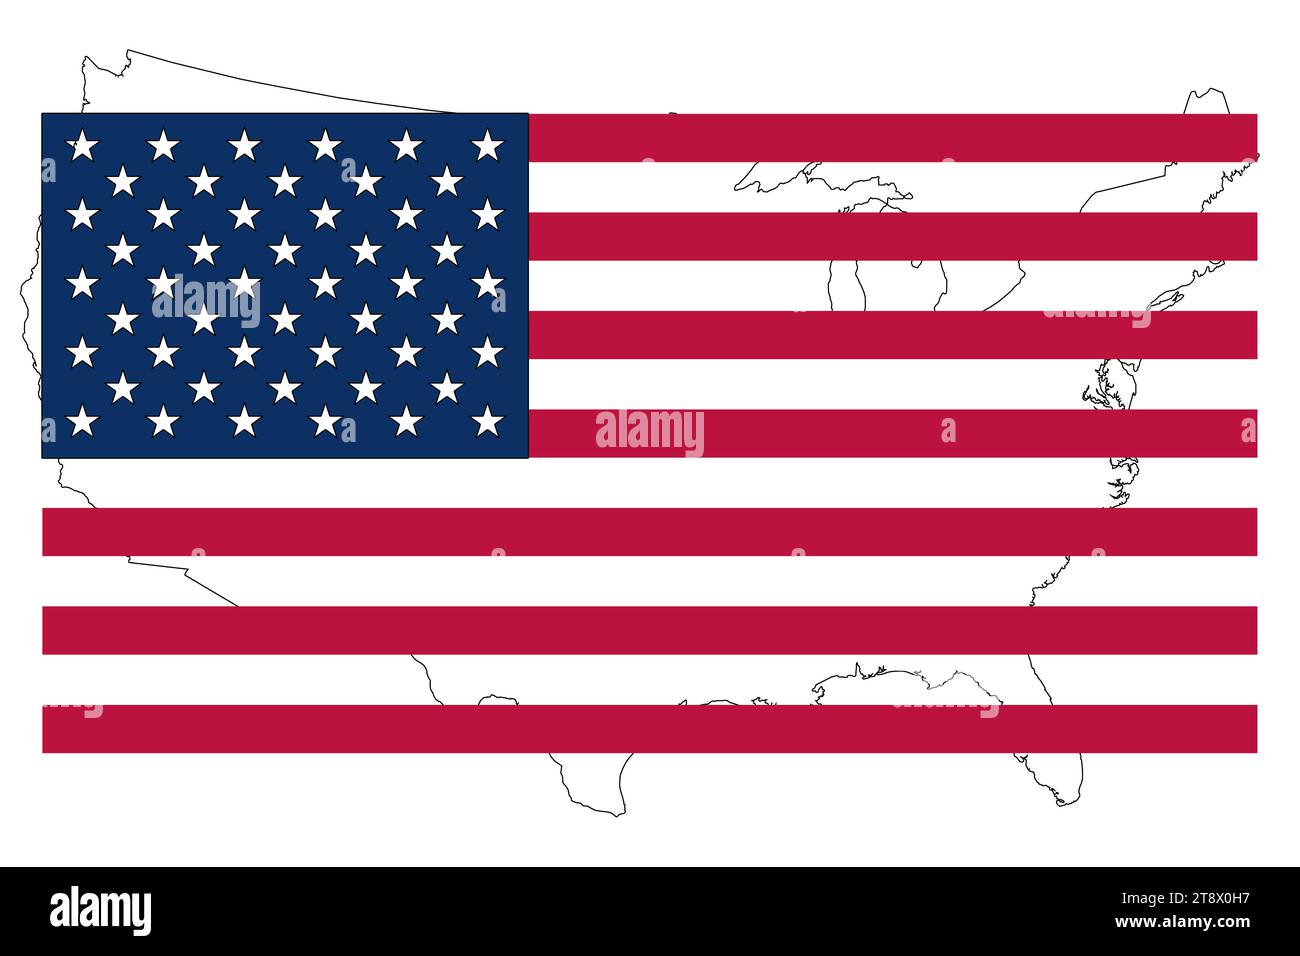 stati uniti, bandiera con l'america sullo sfondo, simbolo della nazione per la storia e la memoria di questo popolo. elezioni politiche, bandiera del logo. Foto Stock